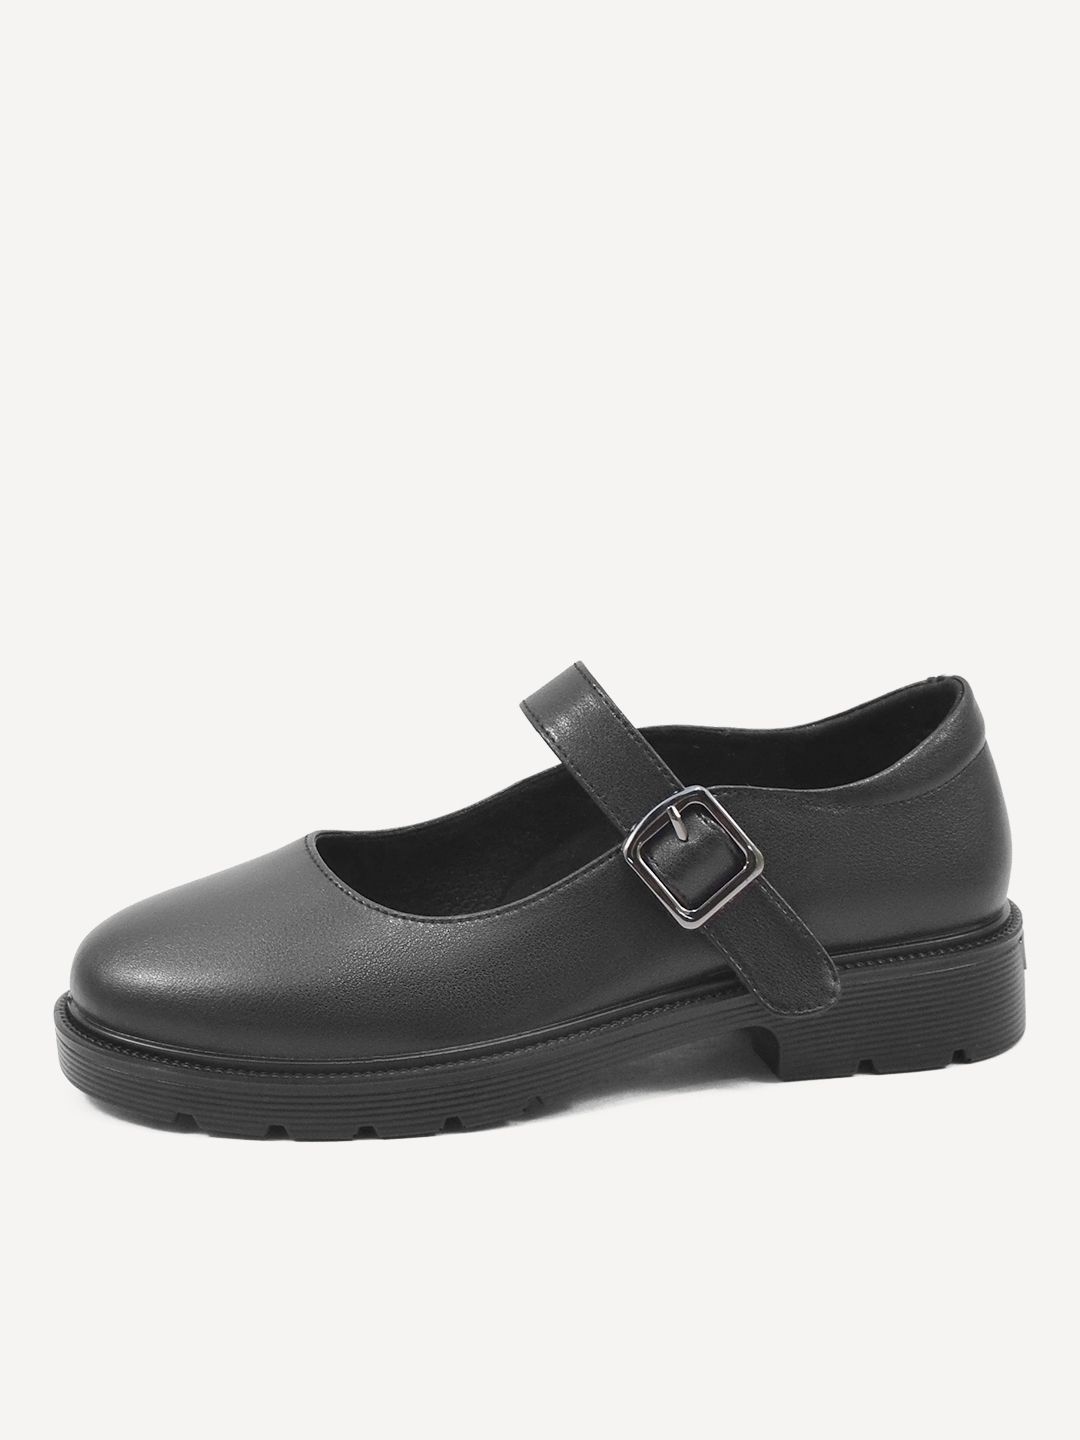 Туфли женские Baden CV189-220 черные 37 RU